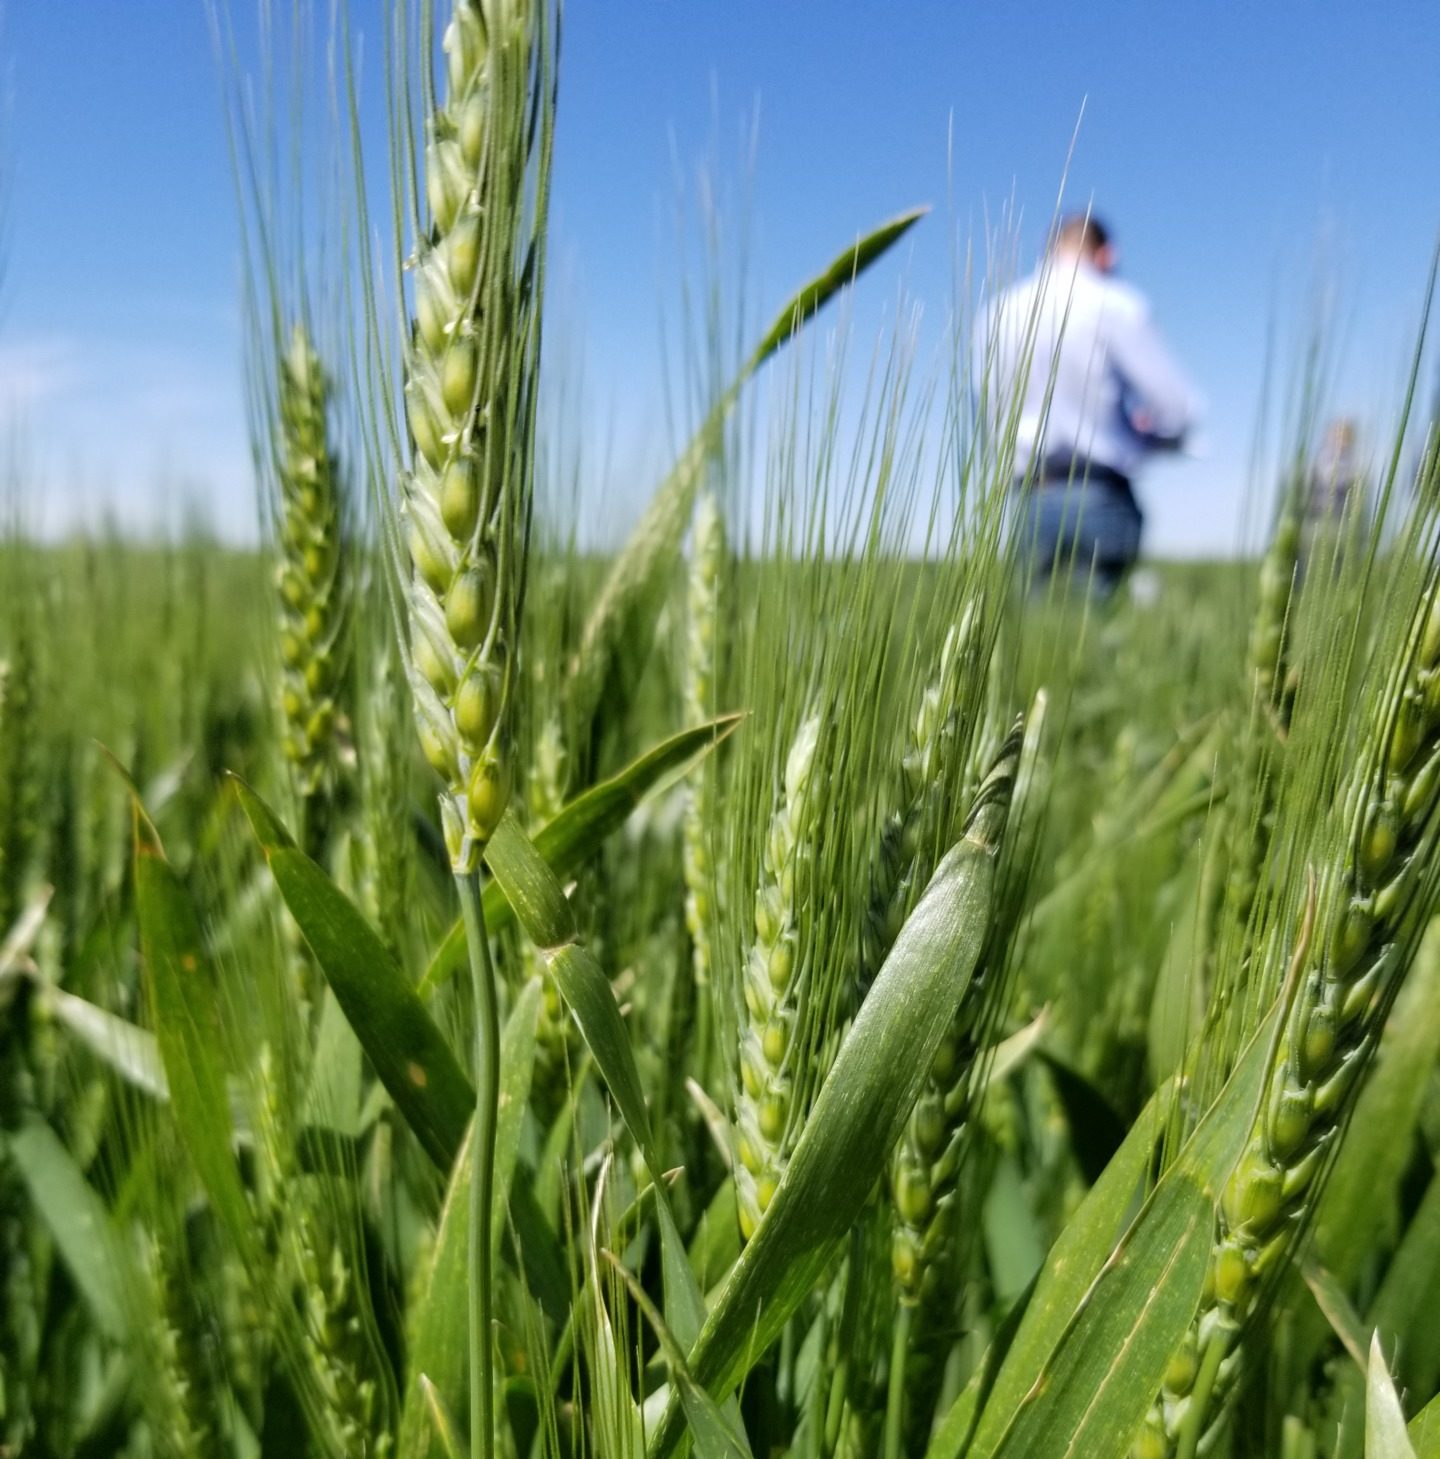 Small grains field plot tour set May 26 at Bushland